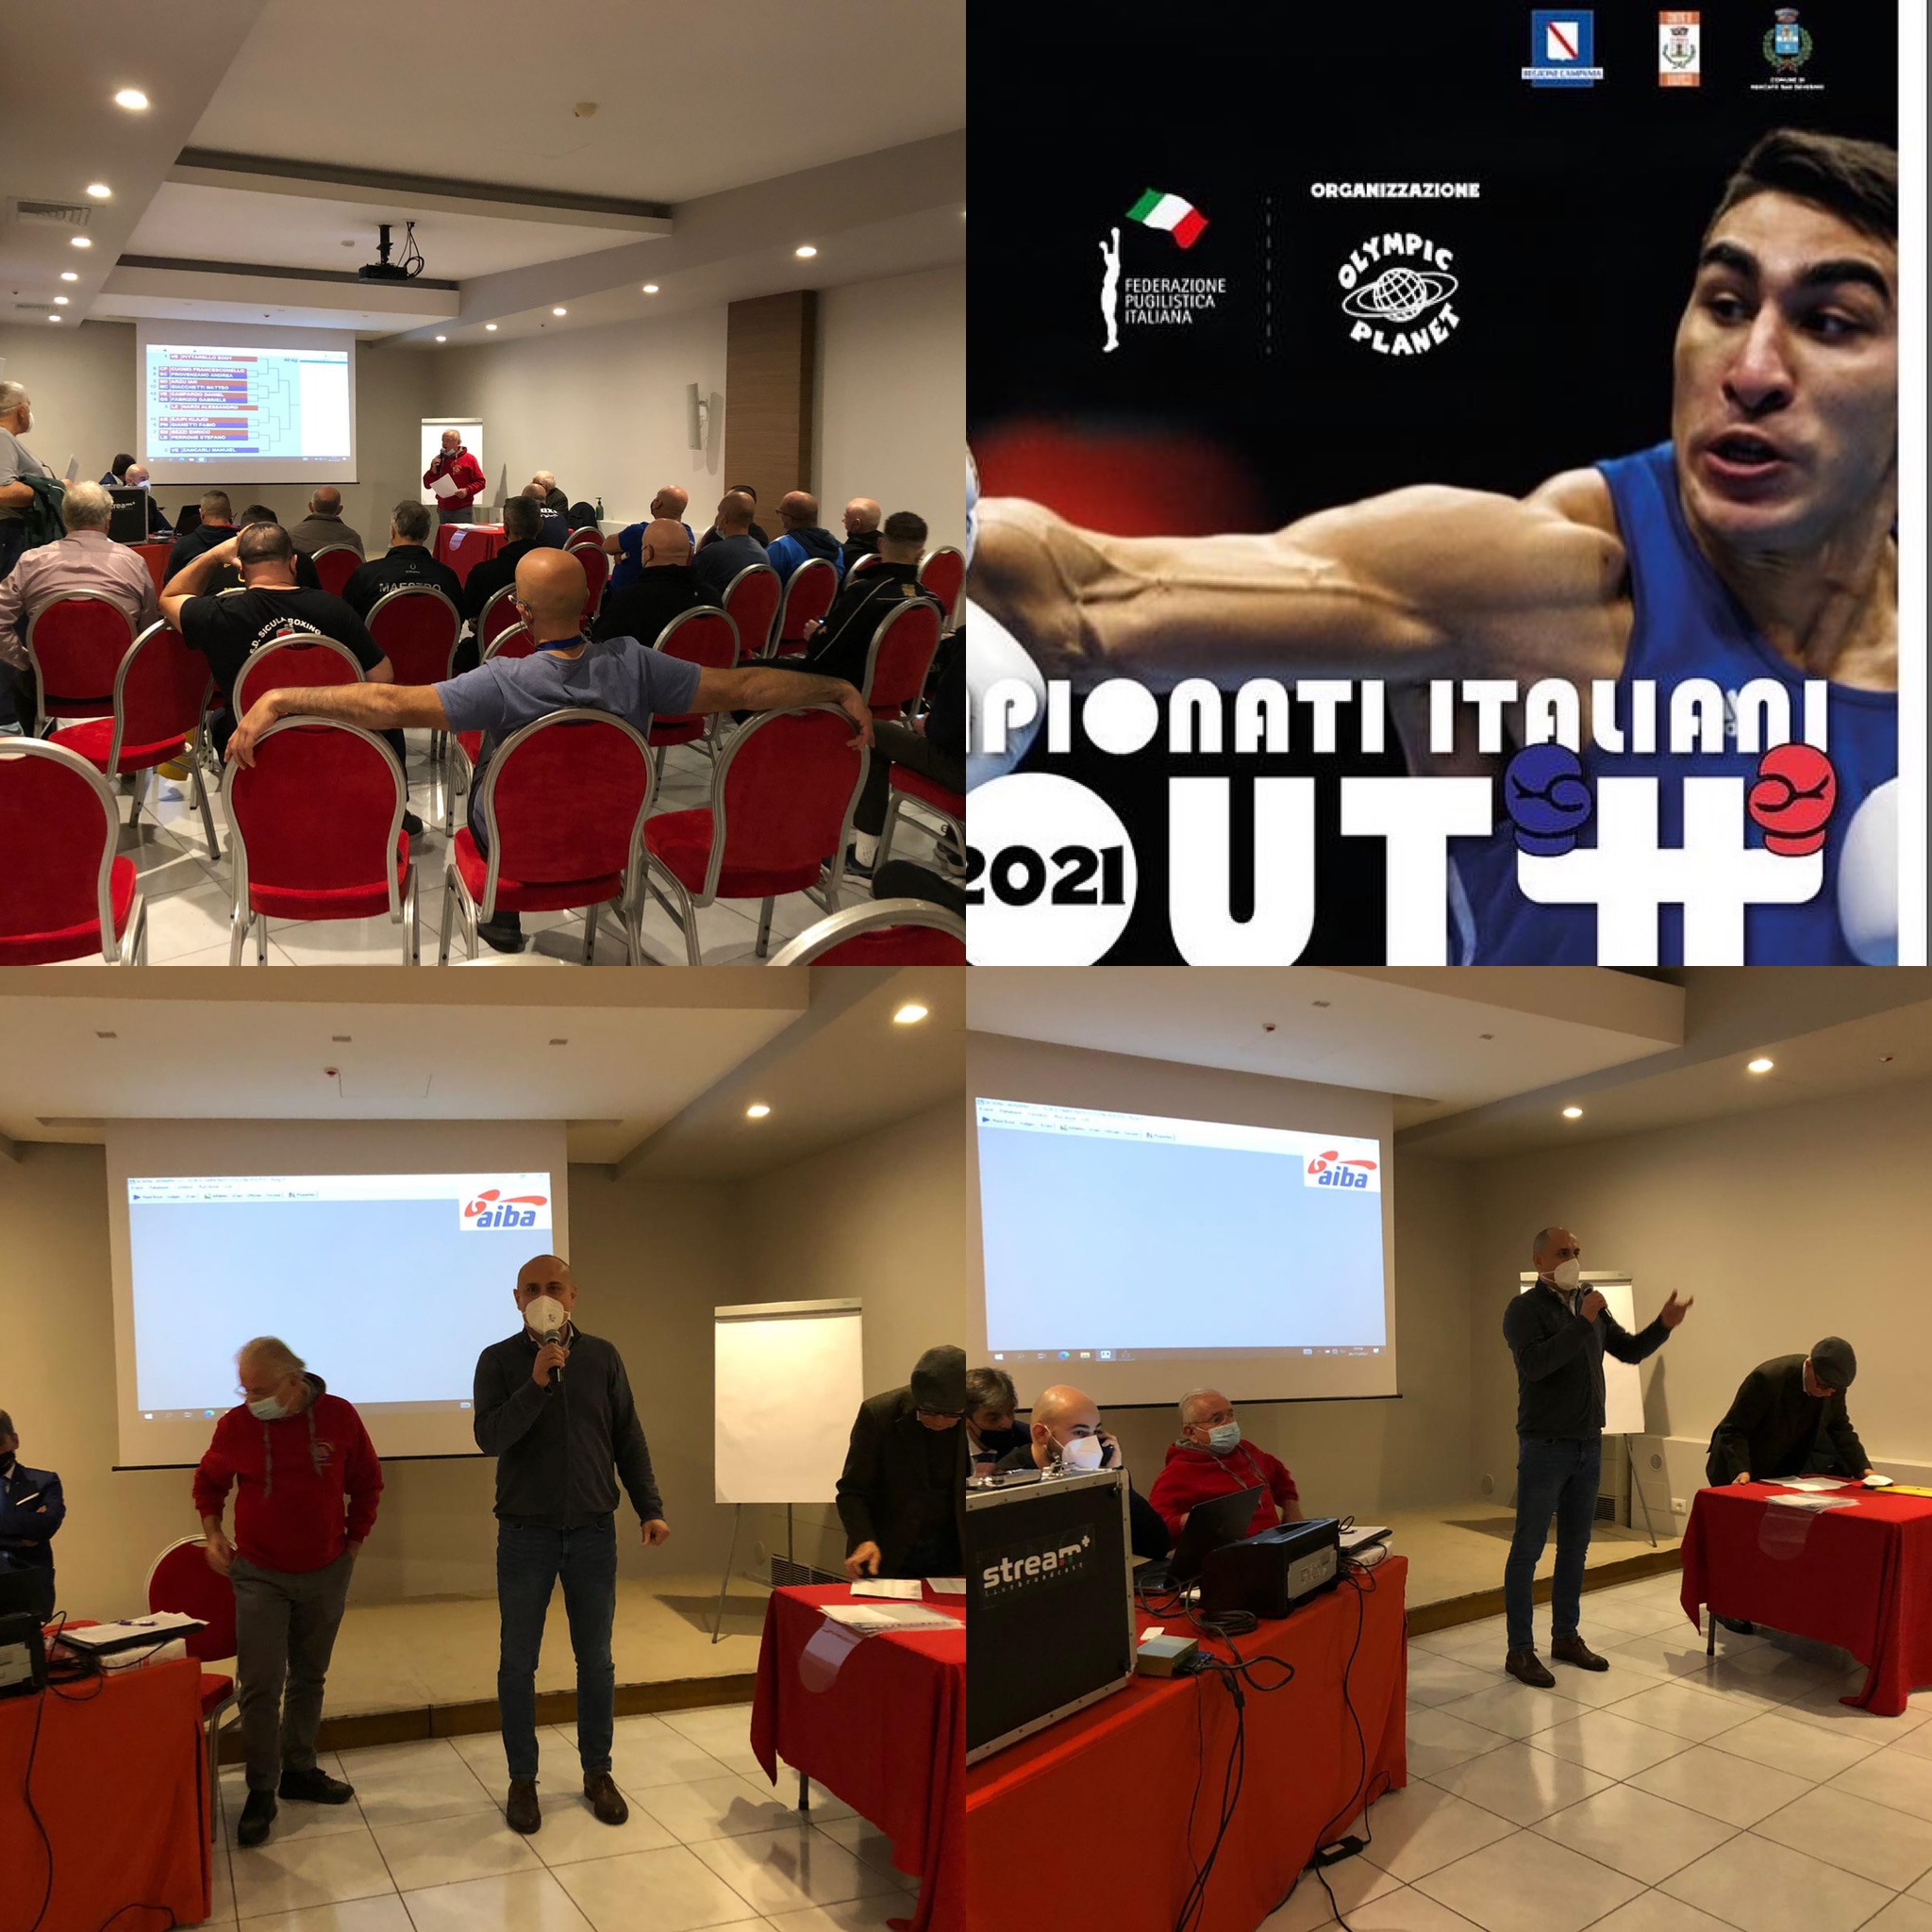 Campionati Italiani Youth Maschili 2021 - Baronissi (SA) 26-28 Novembre - PROGRAMMA 16° - INFOLIVESTREAMING INIZIO H 14.30